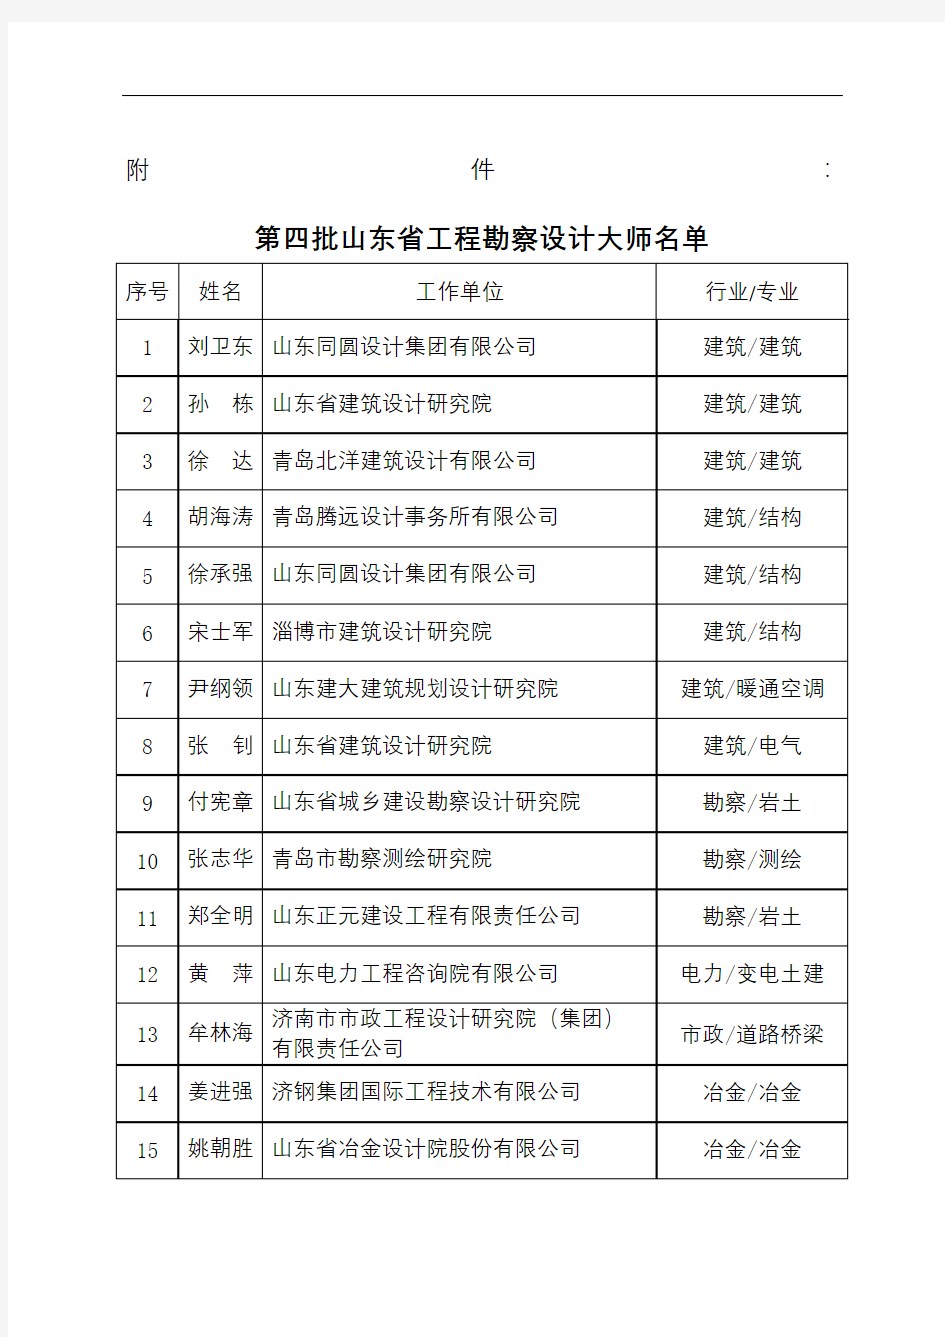 第四批山东省工程勘察设计大师名单